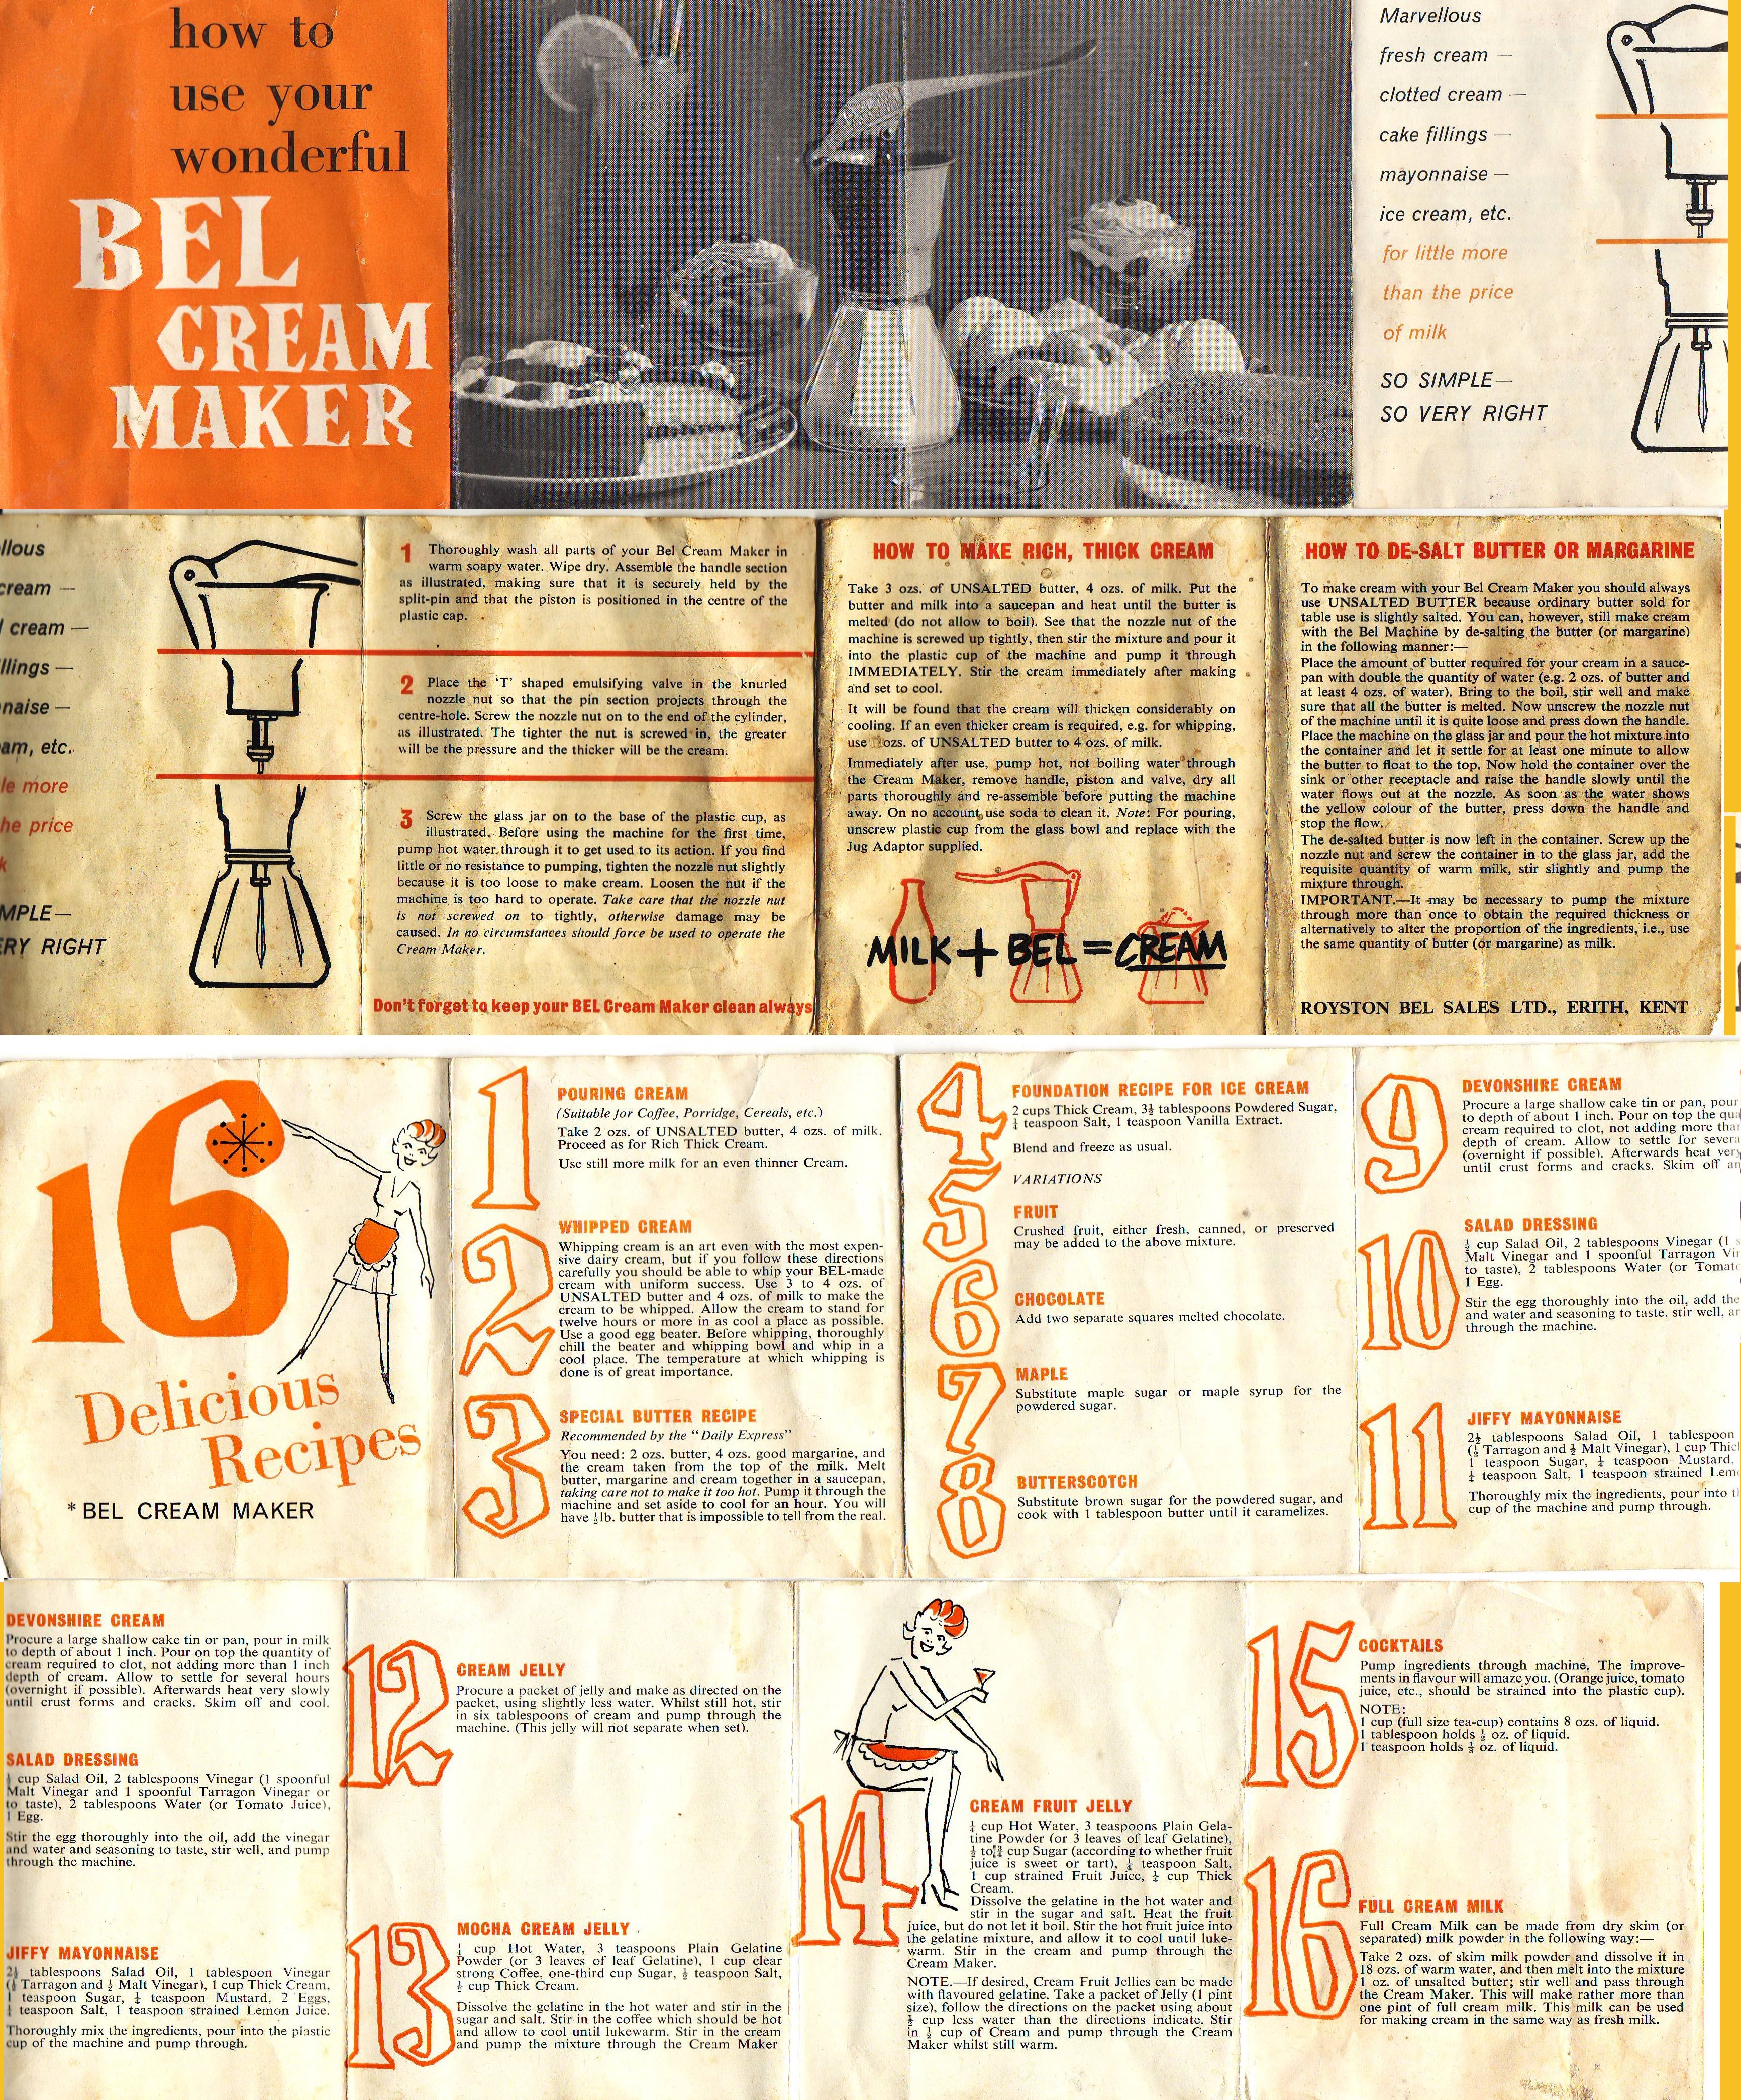 Instructions for Bel Cream Maker